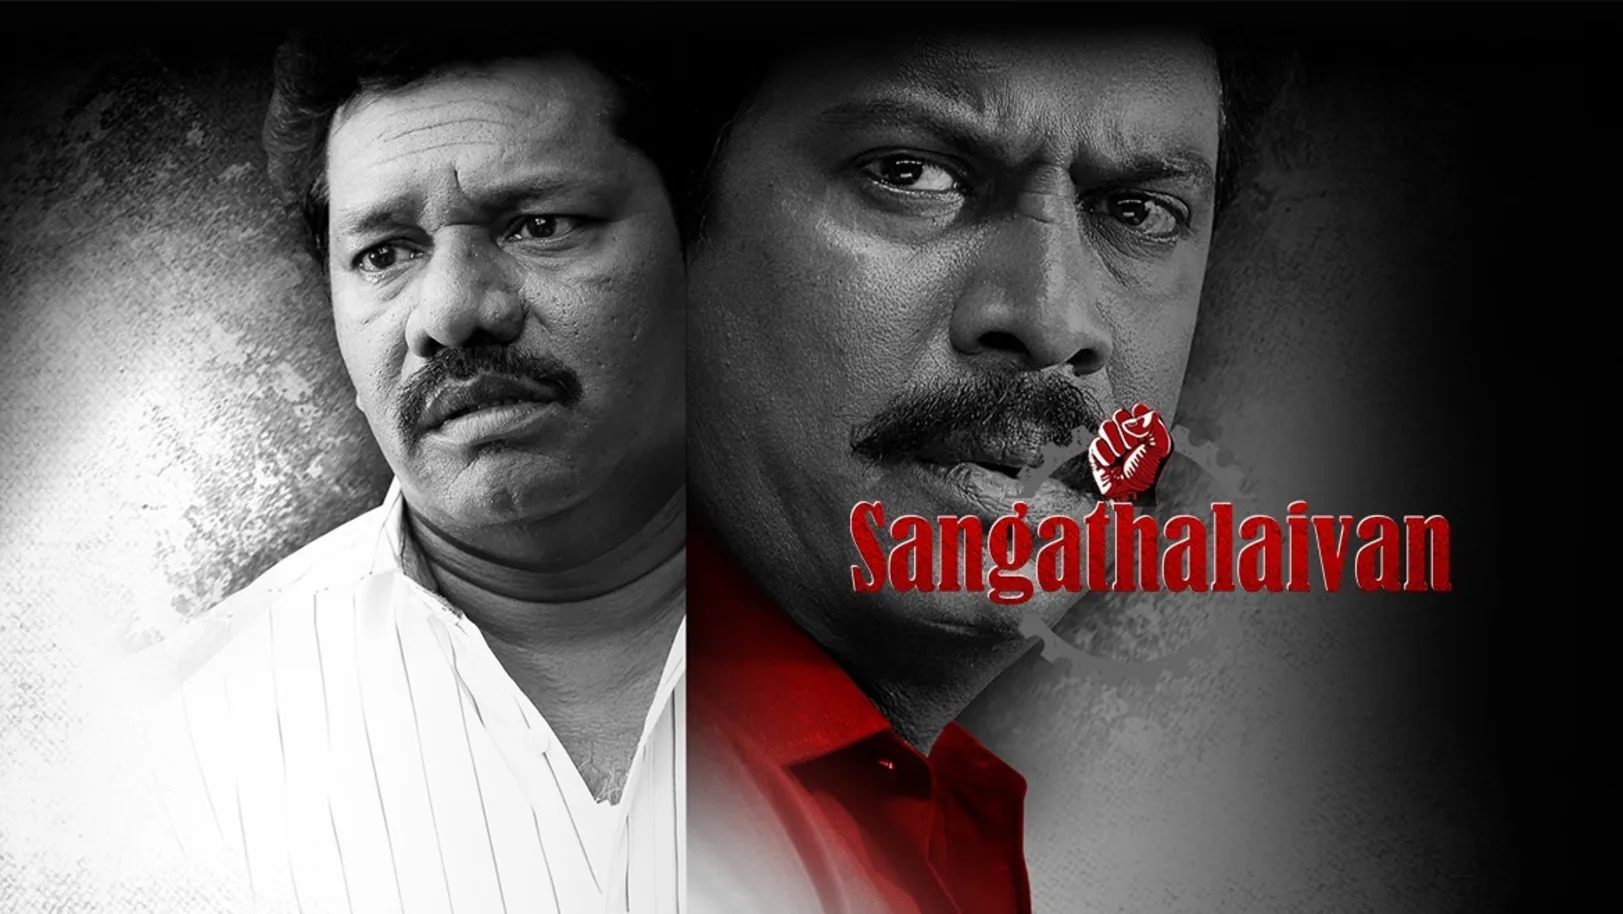 Sangathalaivan Movie